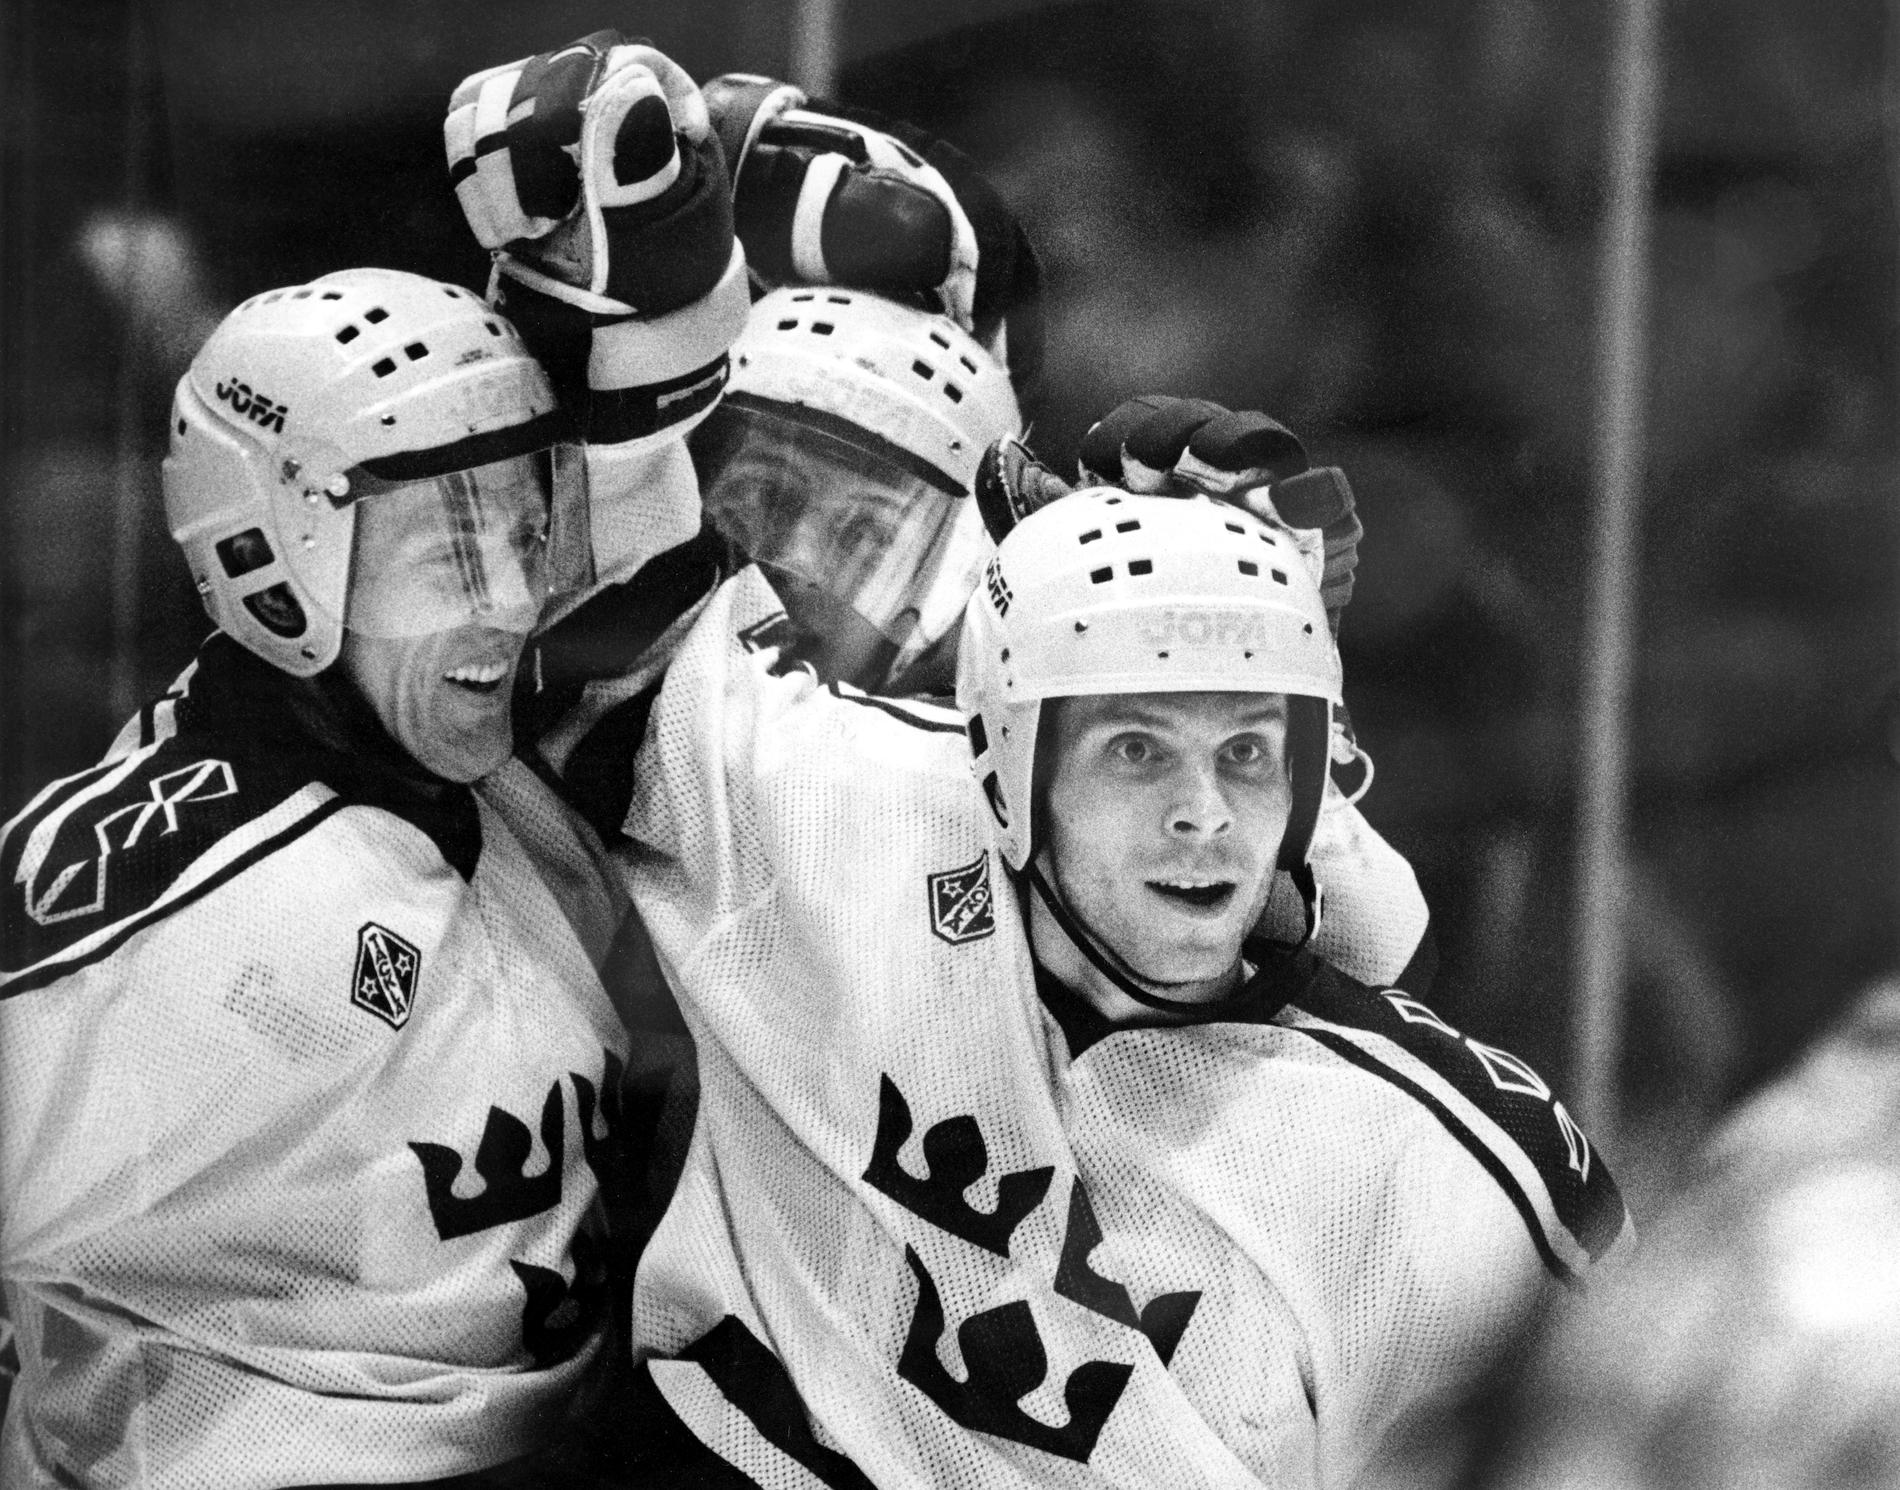 Börje Salming, till vänster, tillsammans med Anders "Masken" Carlsson, till höger, och Tomas Sandström, i mitten, under grundspelsmötet med USA i Globen vid hemma-VM i Stockholm 1989. Arkivbild.